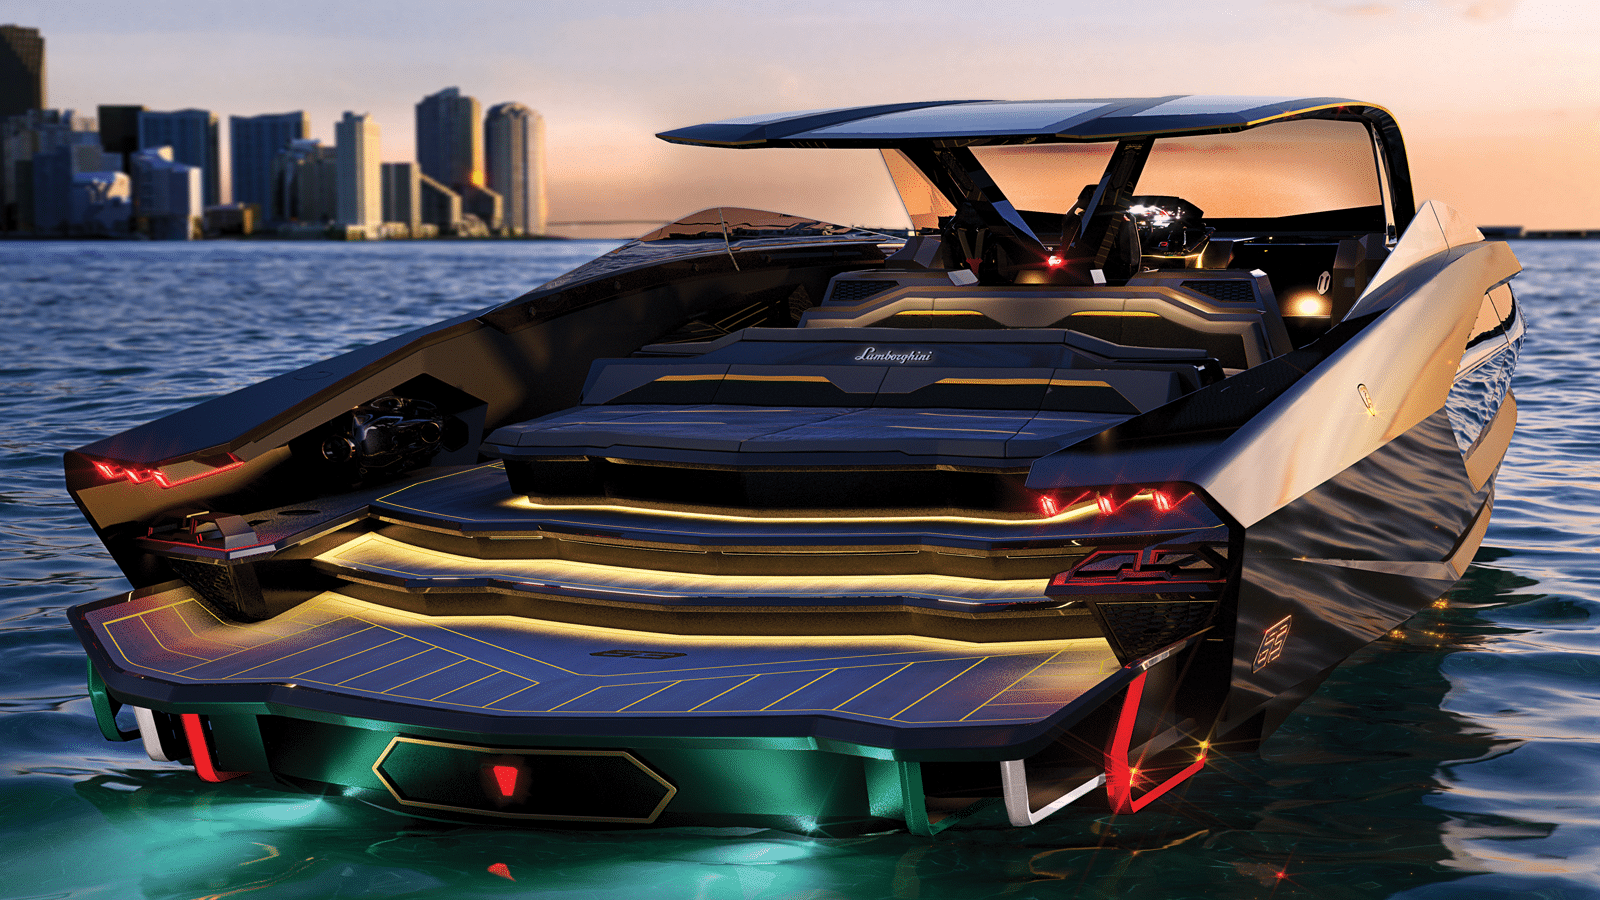 Lamborghini Tecnomar New Boat Yacht Exterior